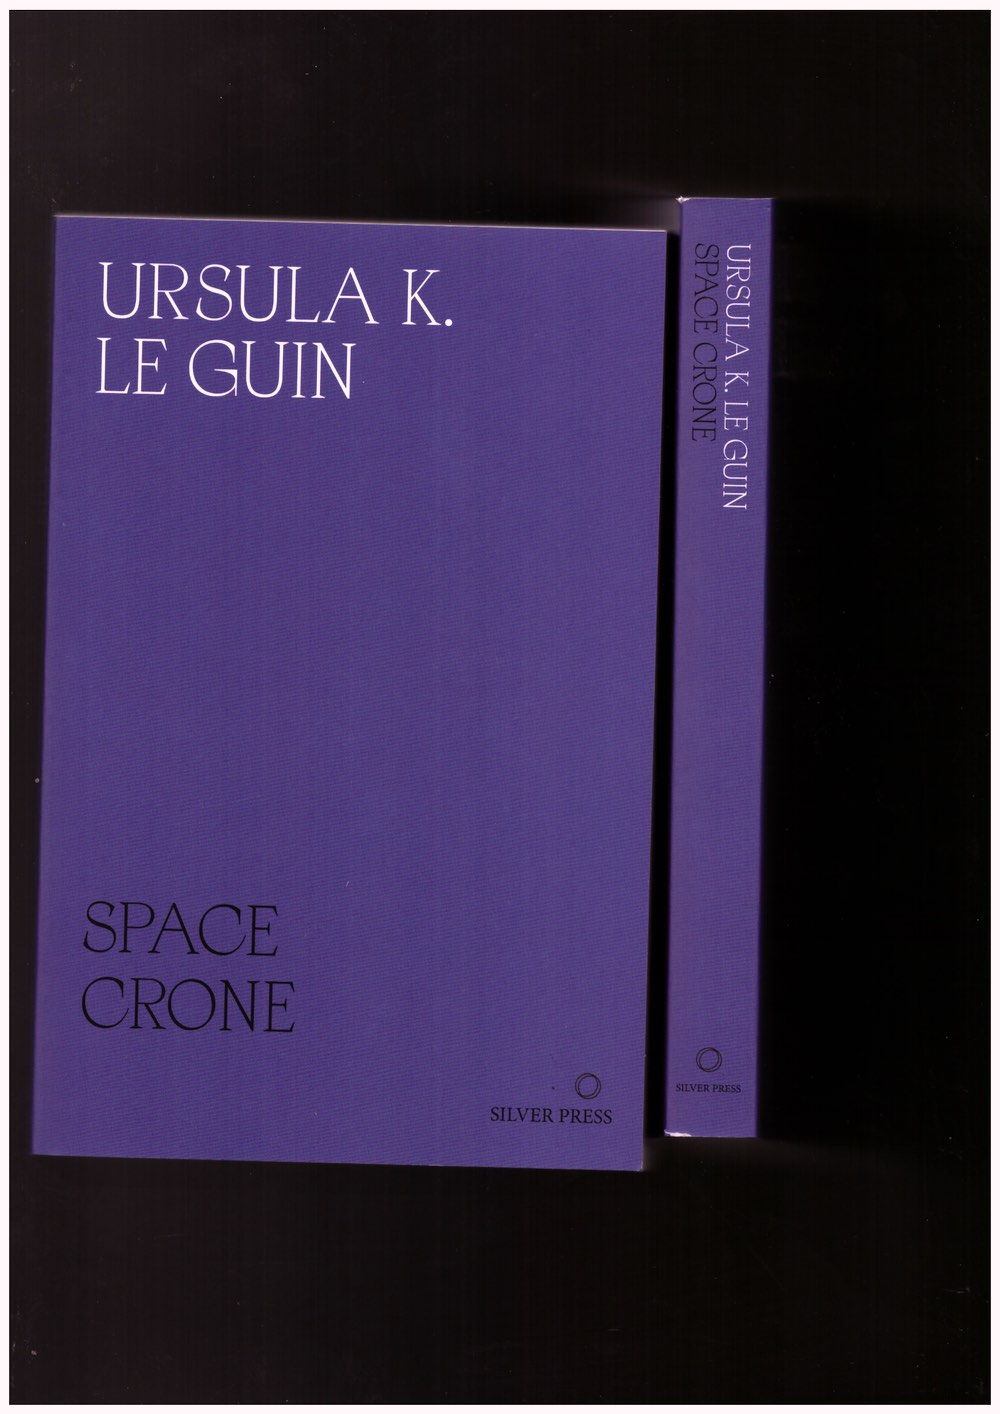 LE GUIN, Ursula K. - Space Crone